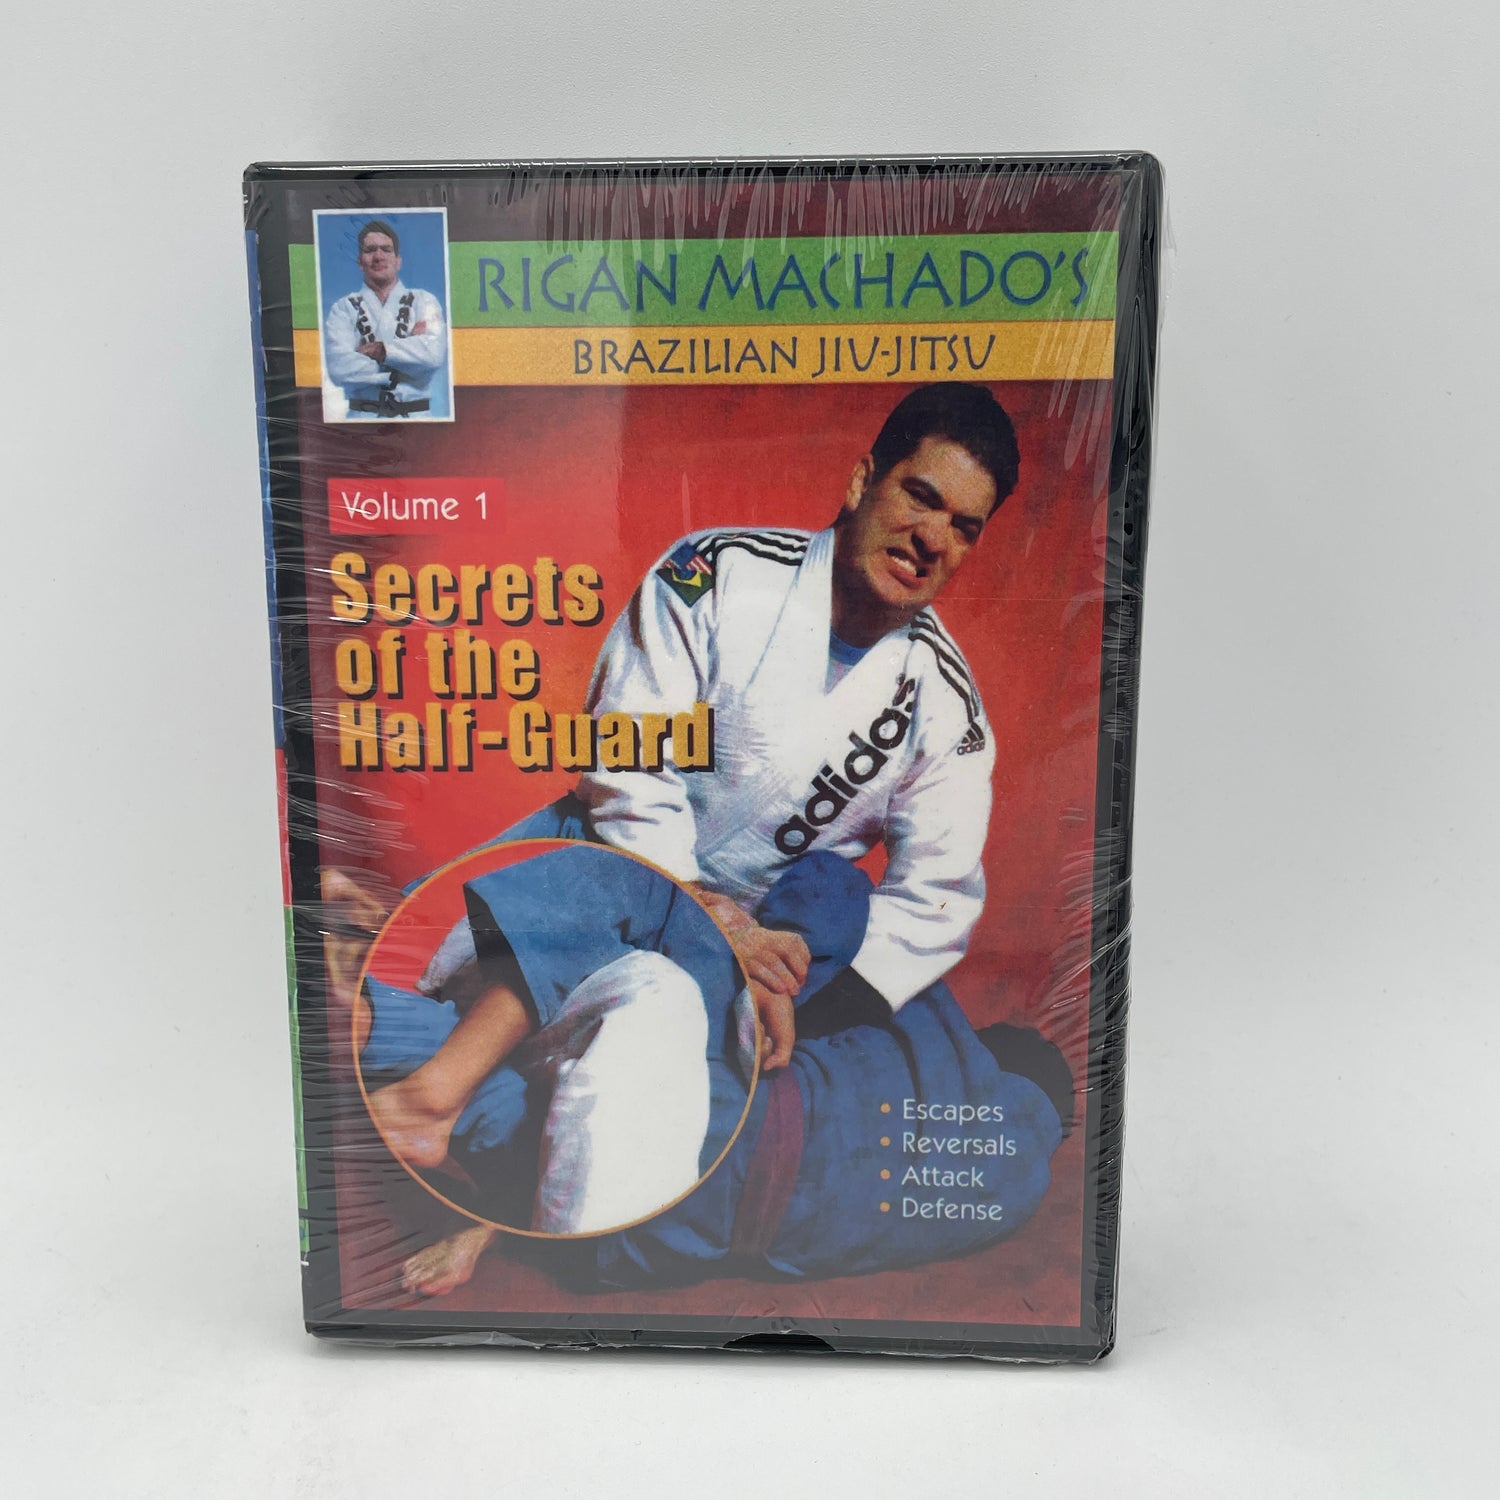 Secretos de la media guardia 3 DVD de Rigan Machado